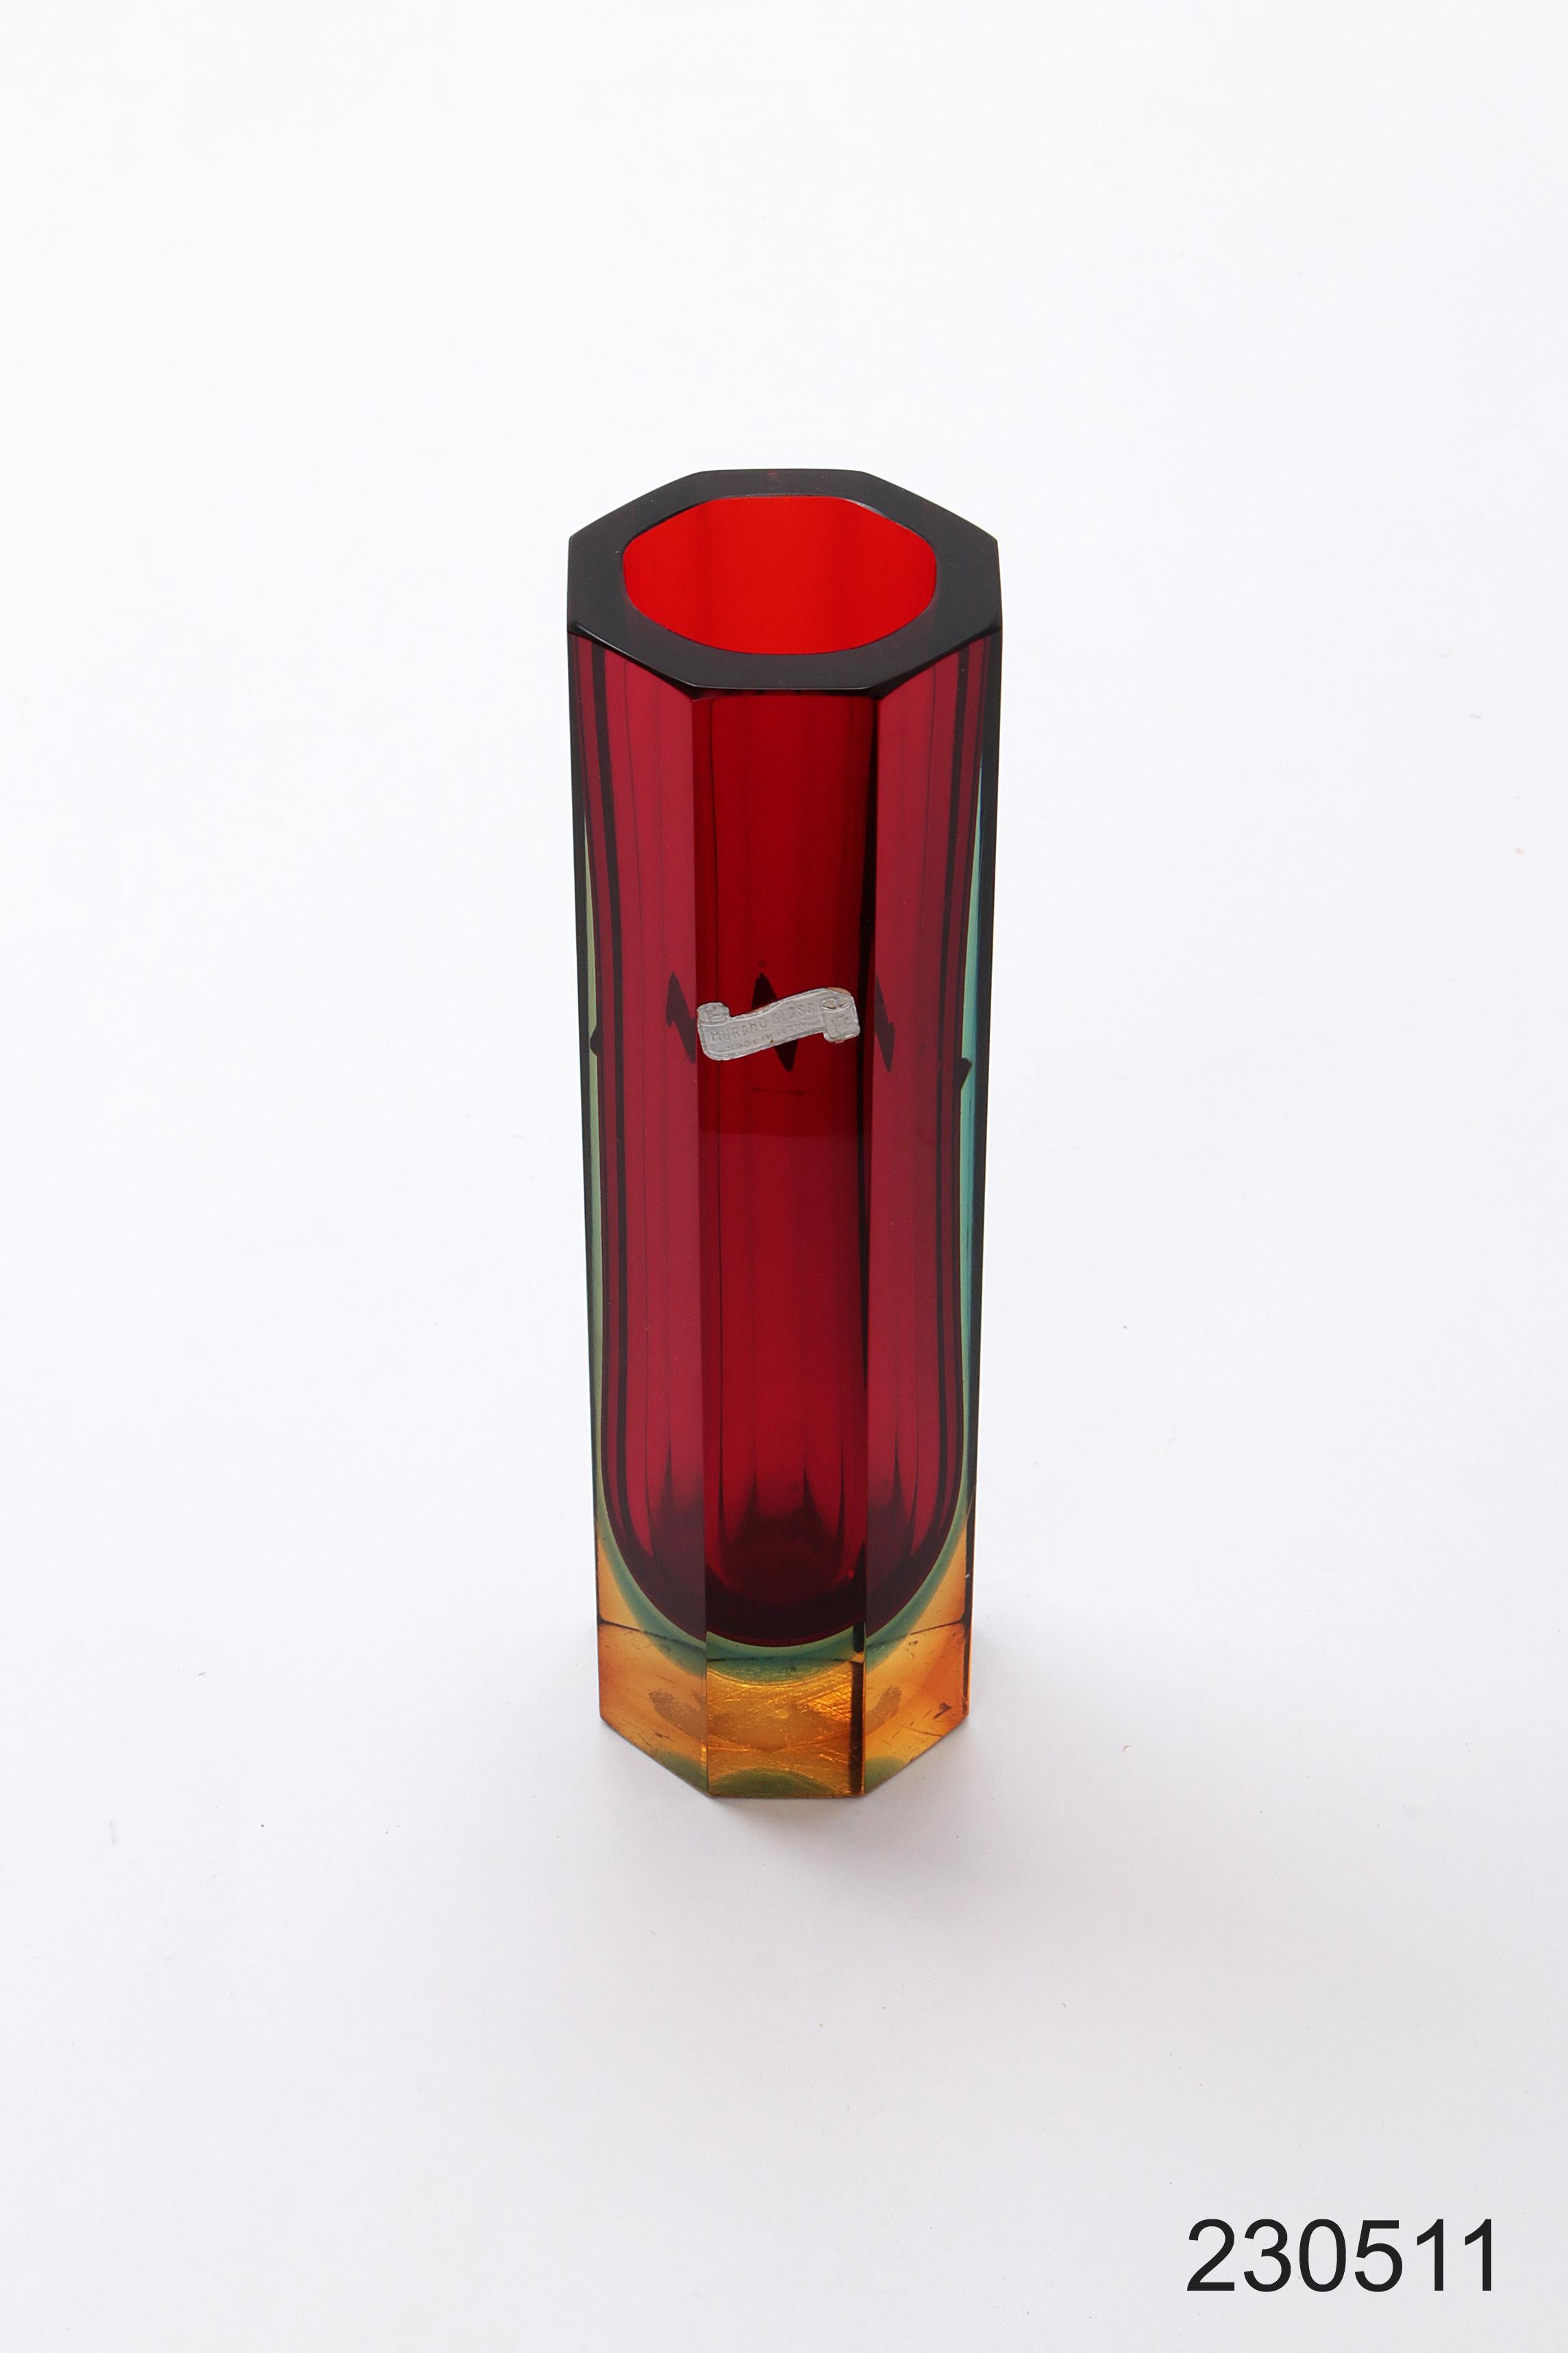 Murano Quadratische Vase 8-eckig Rot/Grün/Blau/Gelb

Murano-Blockvase, 8-seitig, überwiegend rot mit grün, blau und gelb.

Diese Vase ist in tadellosem Zustand und wurde vom Kristallglasmeister Flavio Poli hergestellt.


Vintage Design Vase Murano